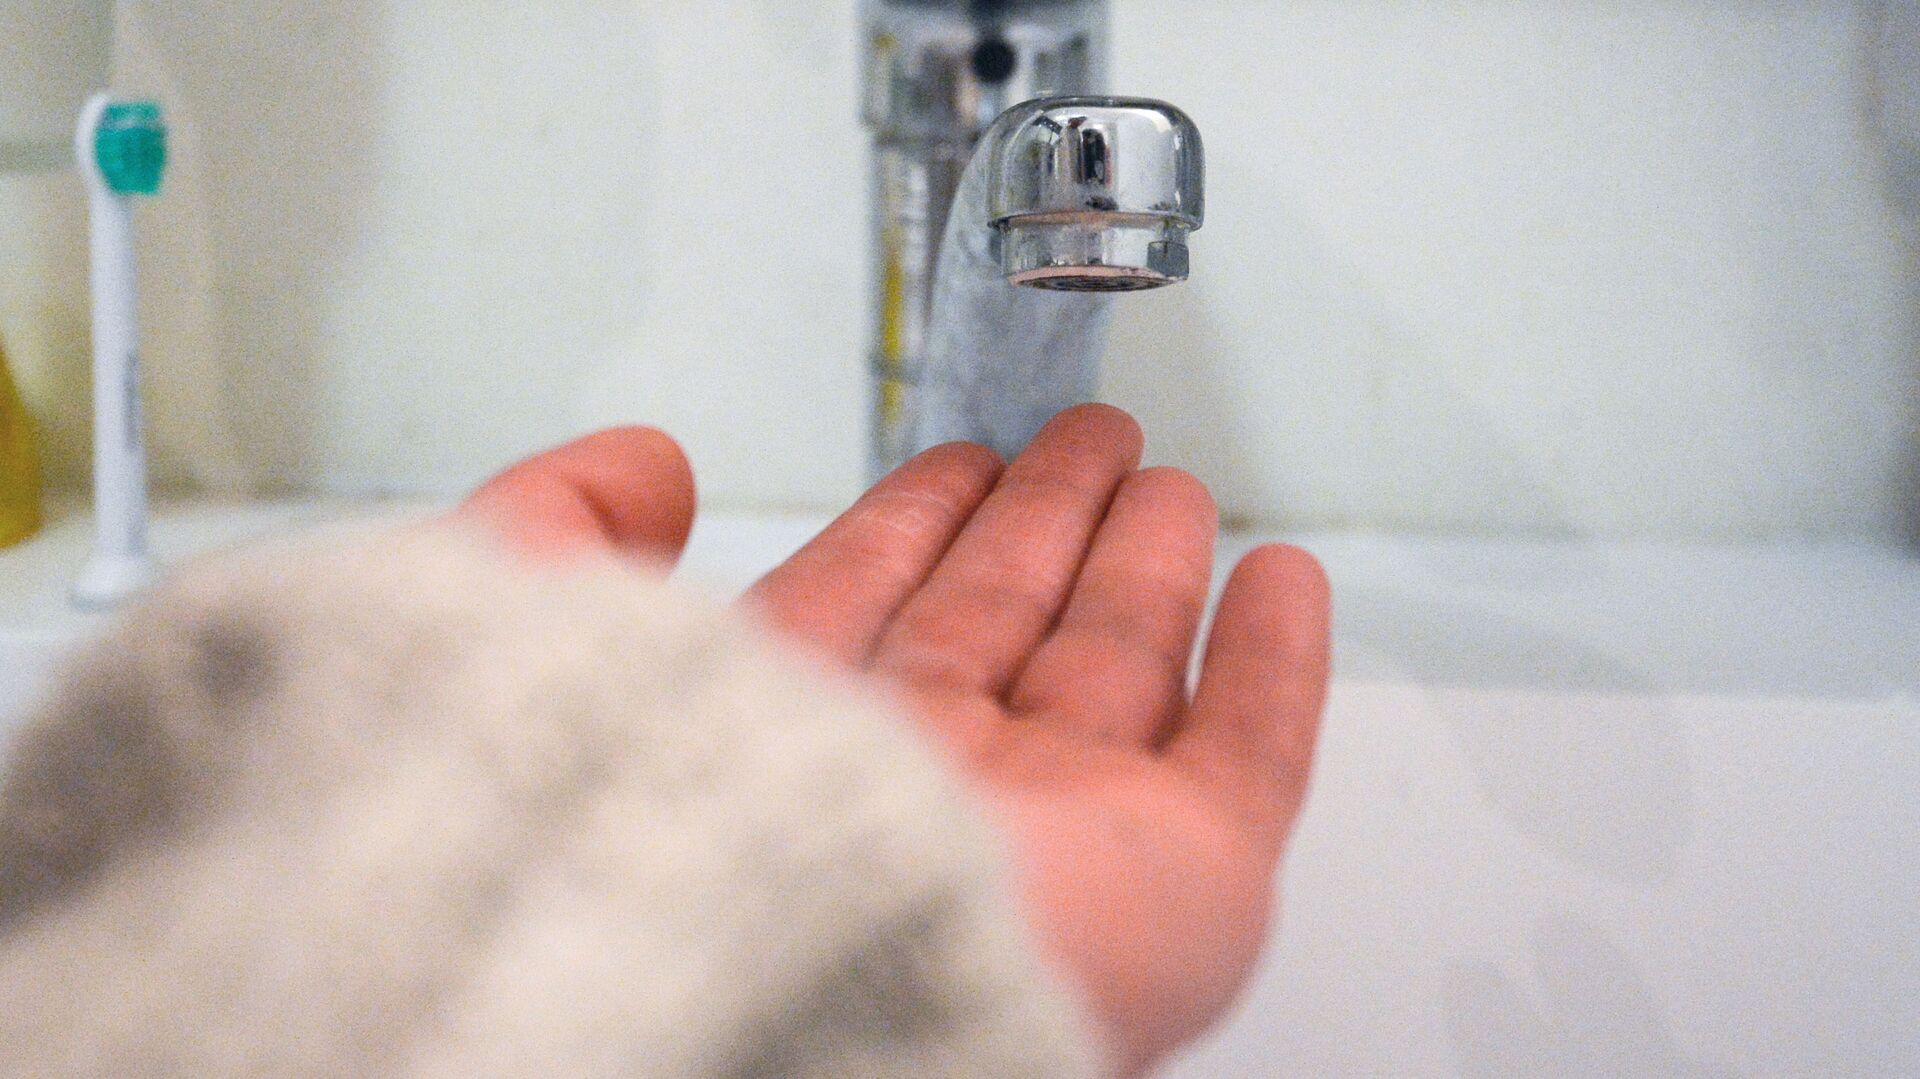 Кран в ванной комнате во время сезонного отключения горячей воды - РИА Новости, 1920, 07.09.2020